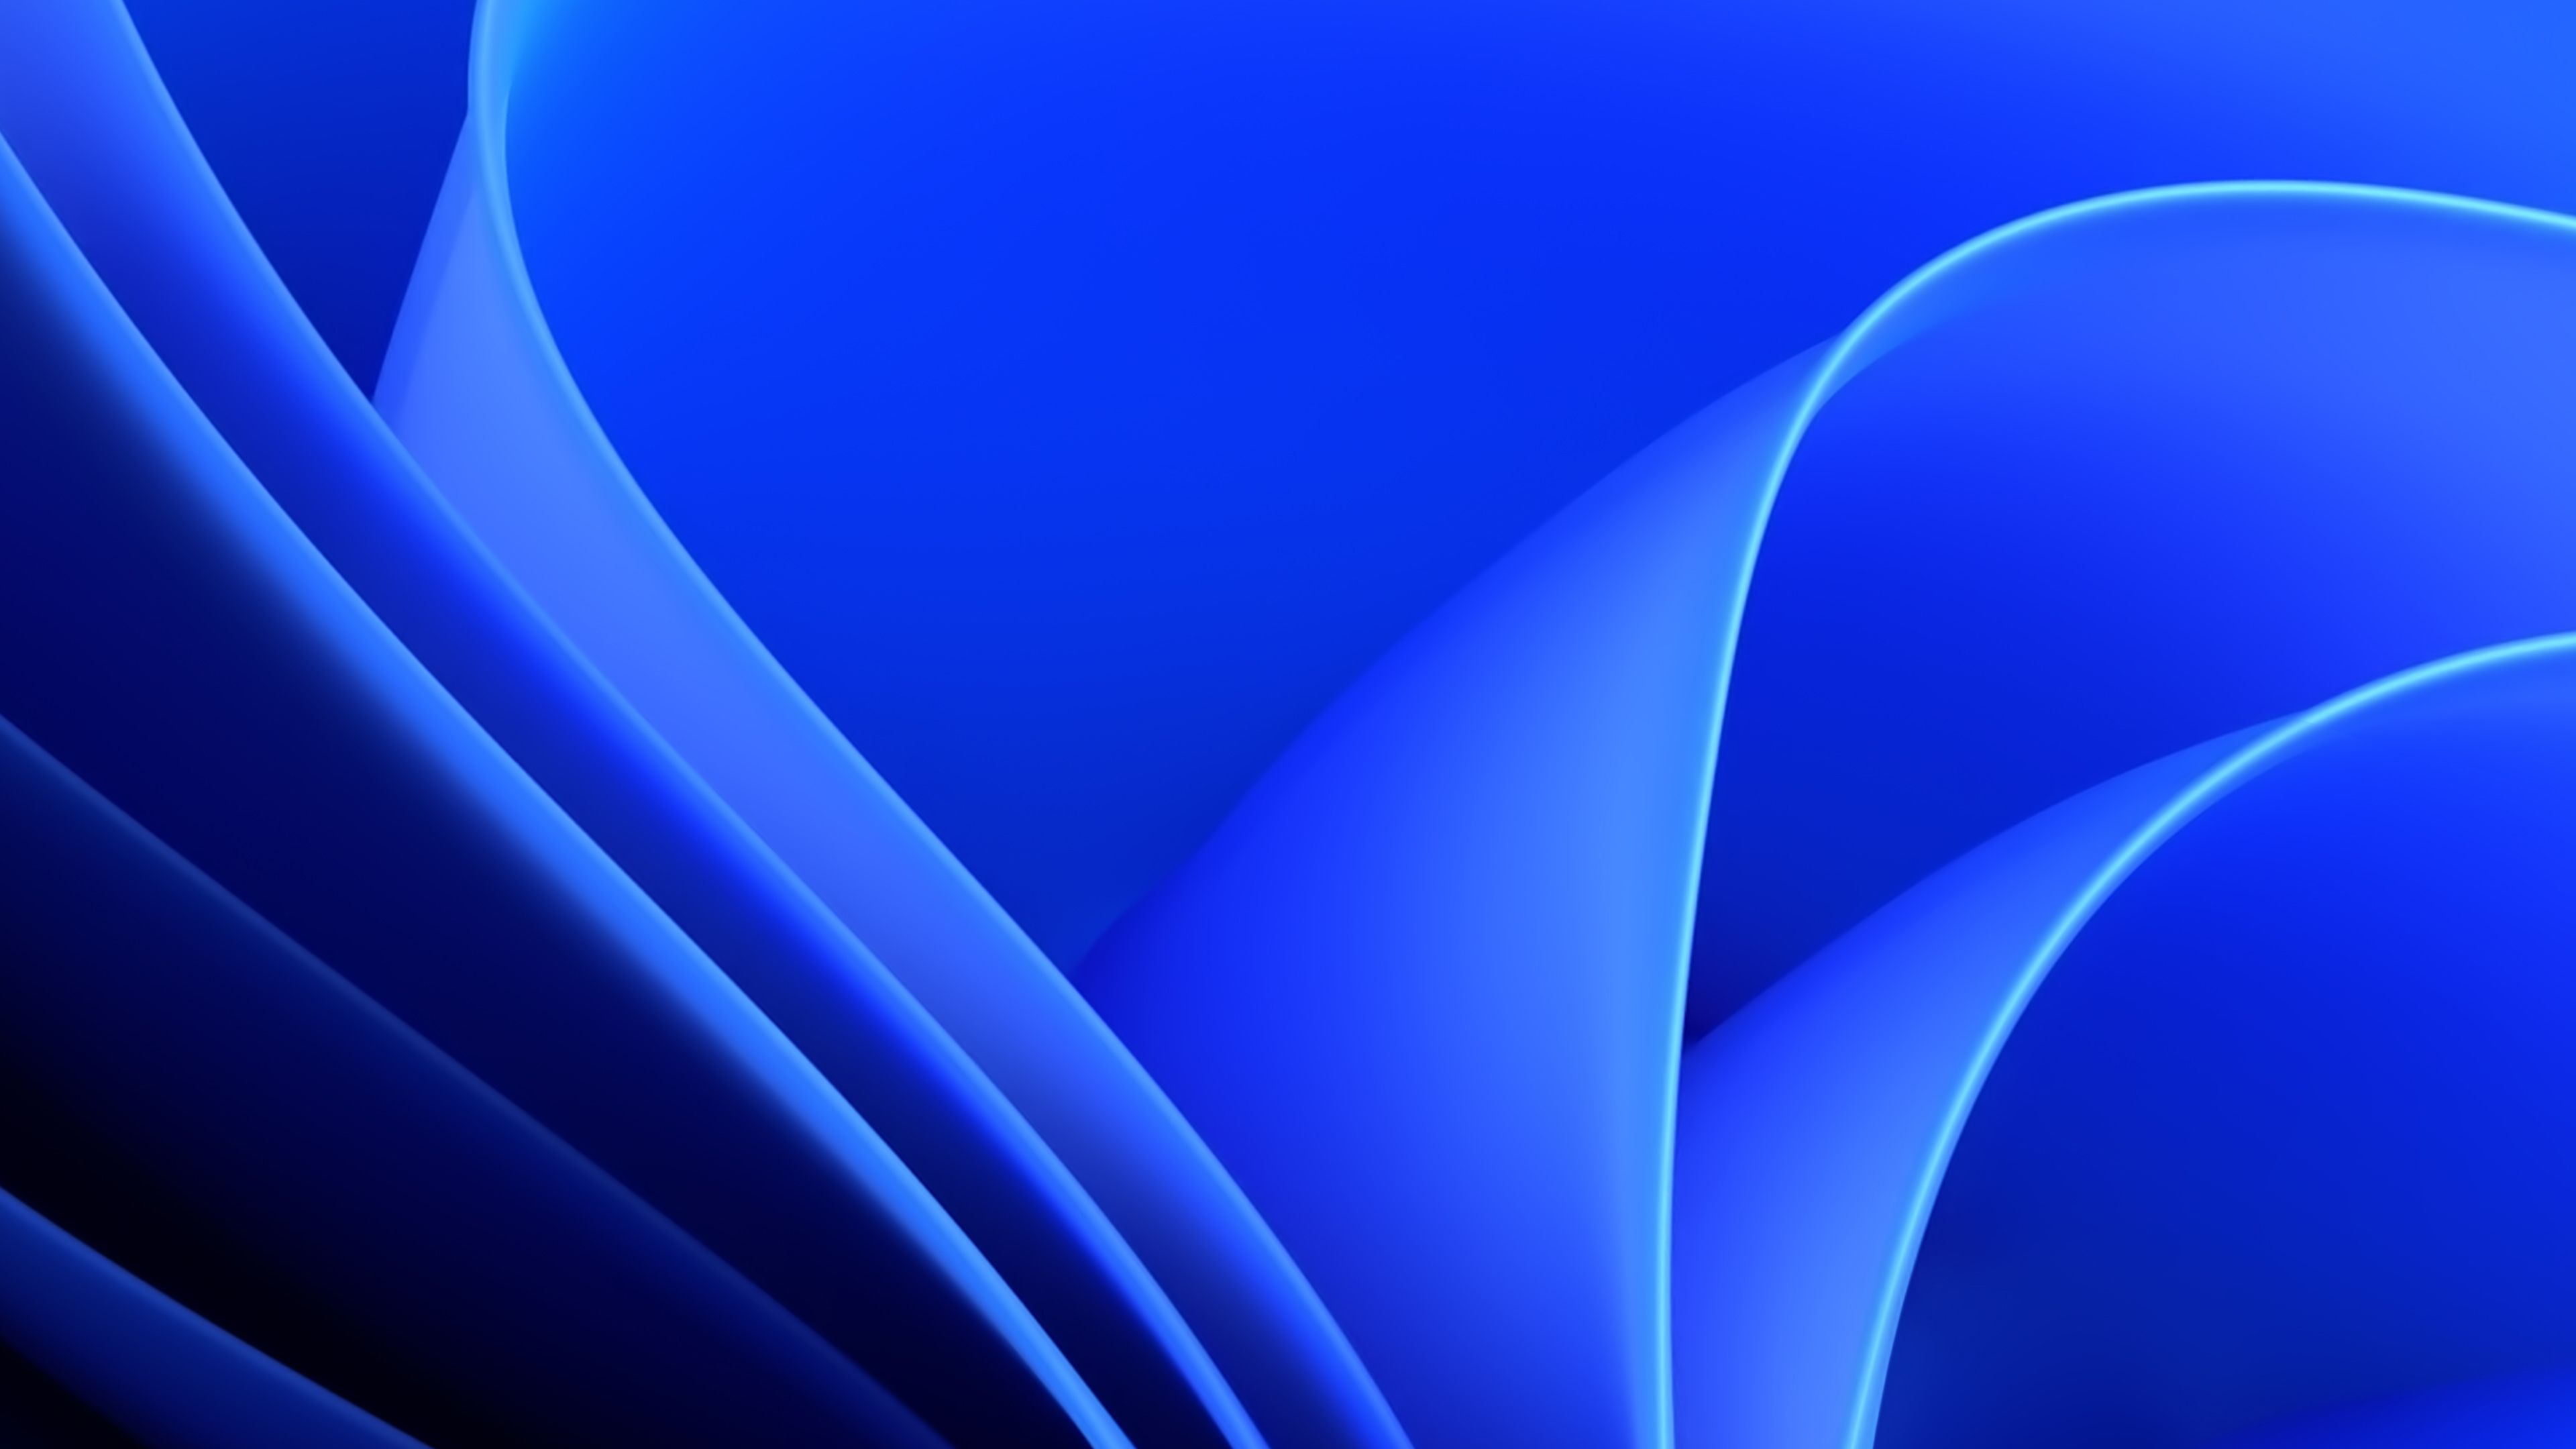 Windows Blue, Stock, Official, 4k Free deskk wallpaper, Ultra HD